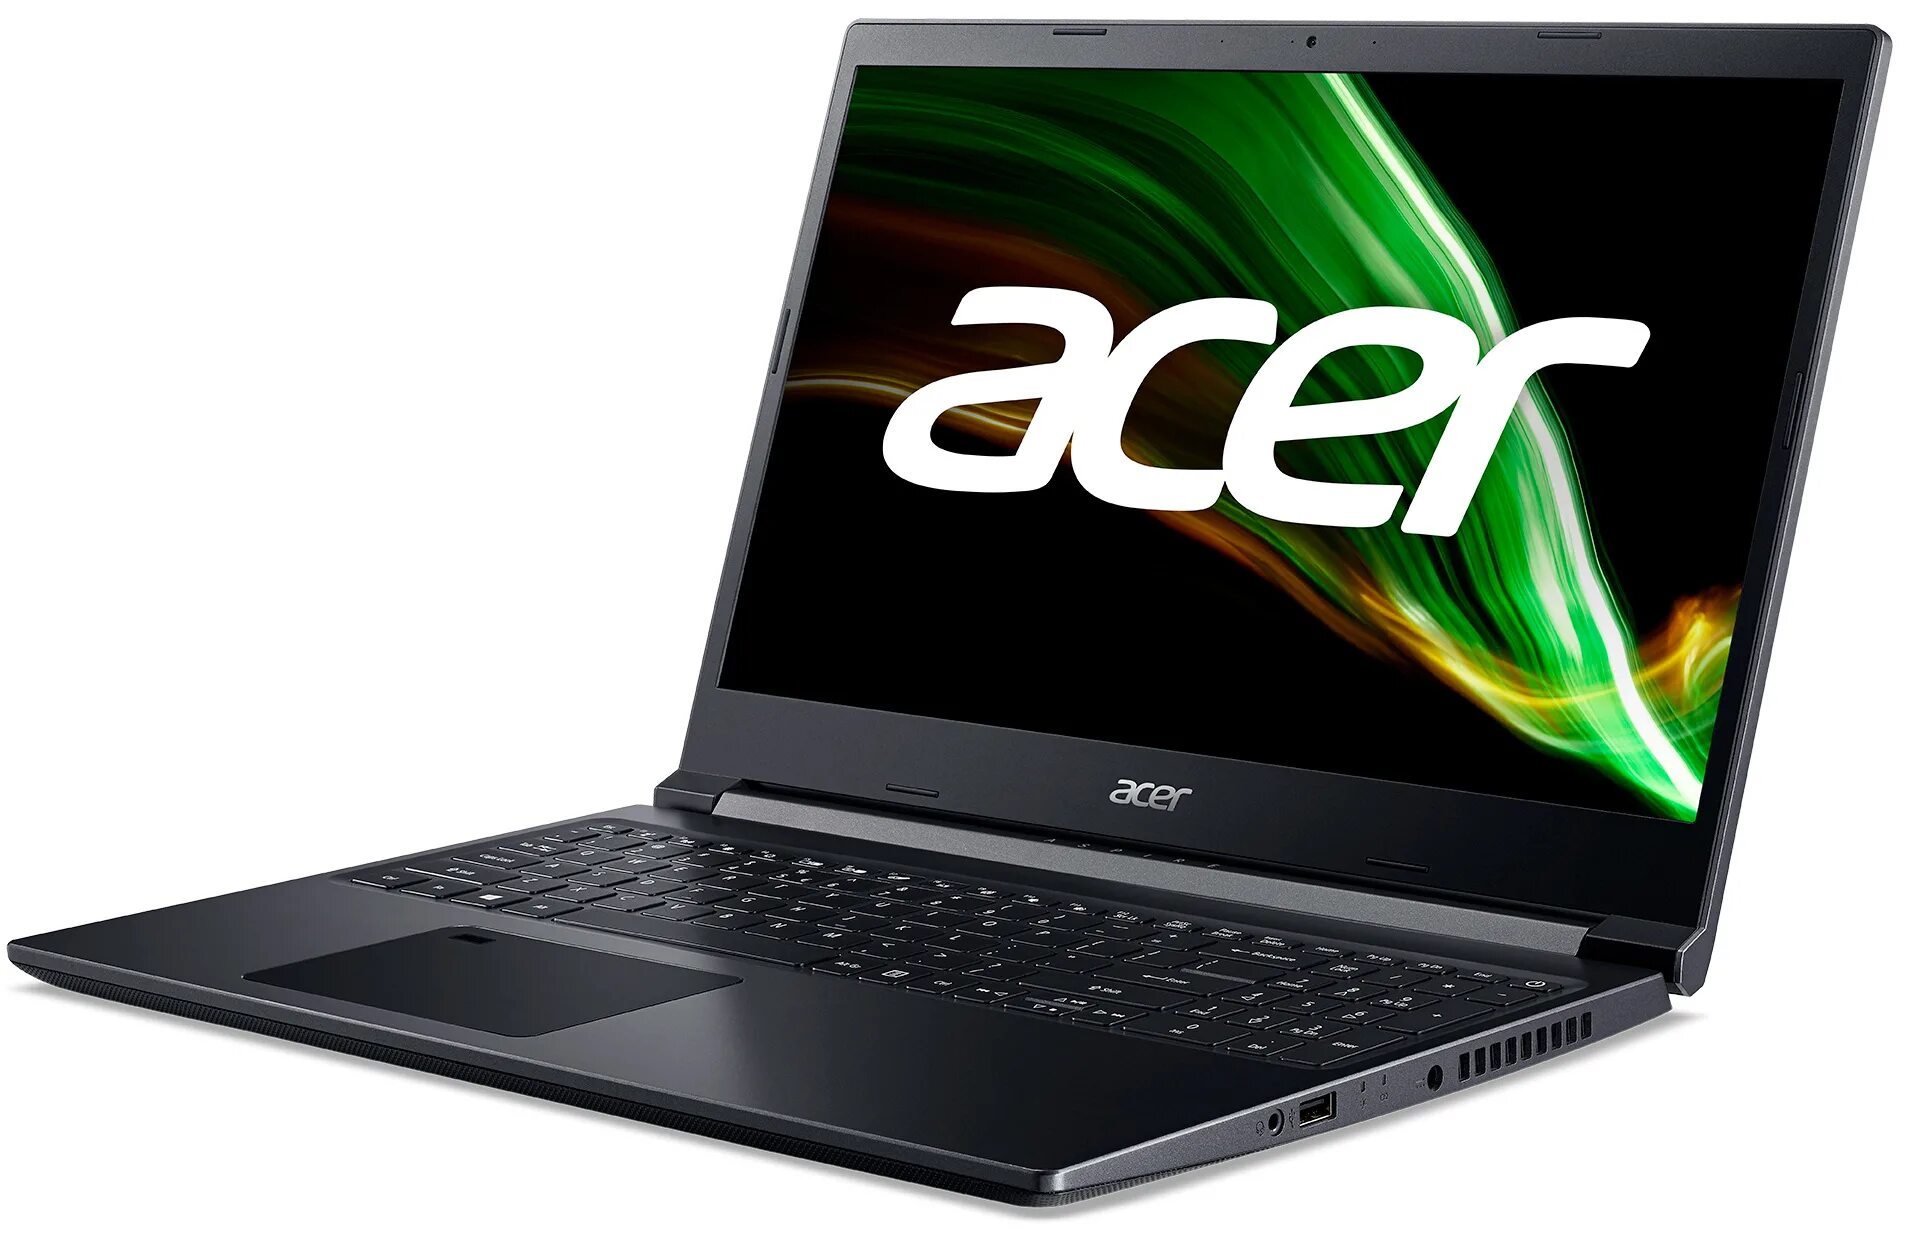 Acer Aspire a515. Acer Aspire a715-42g. Acer Aspire 7 a715-42g. Acer Aspire 7 a715-42g SSD.